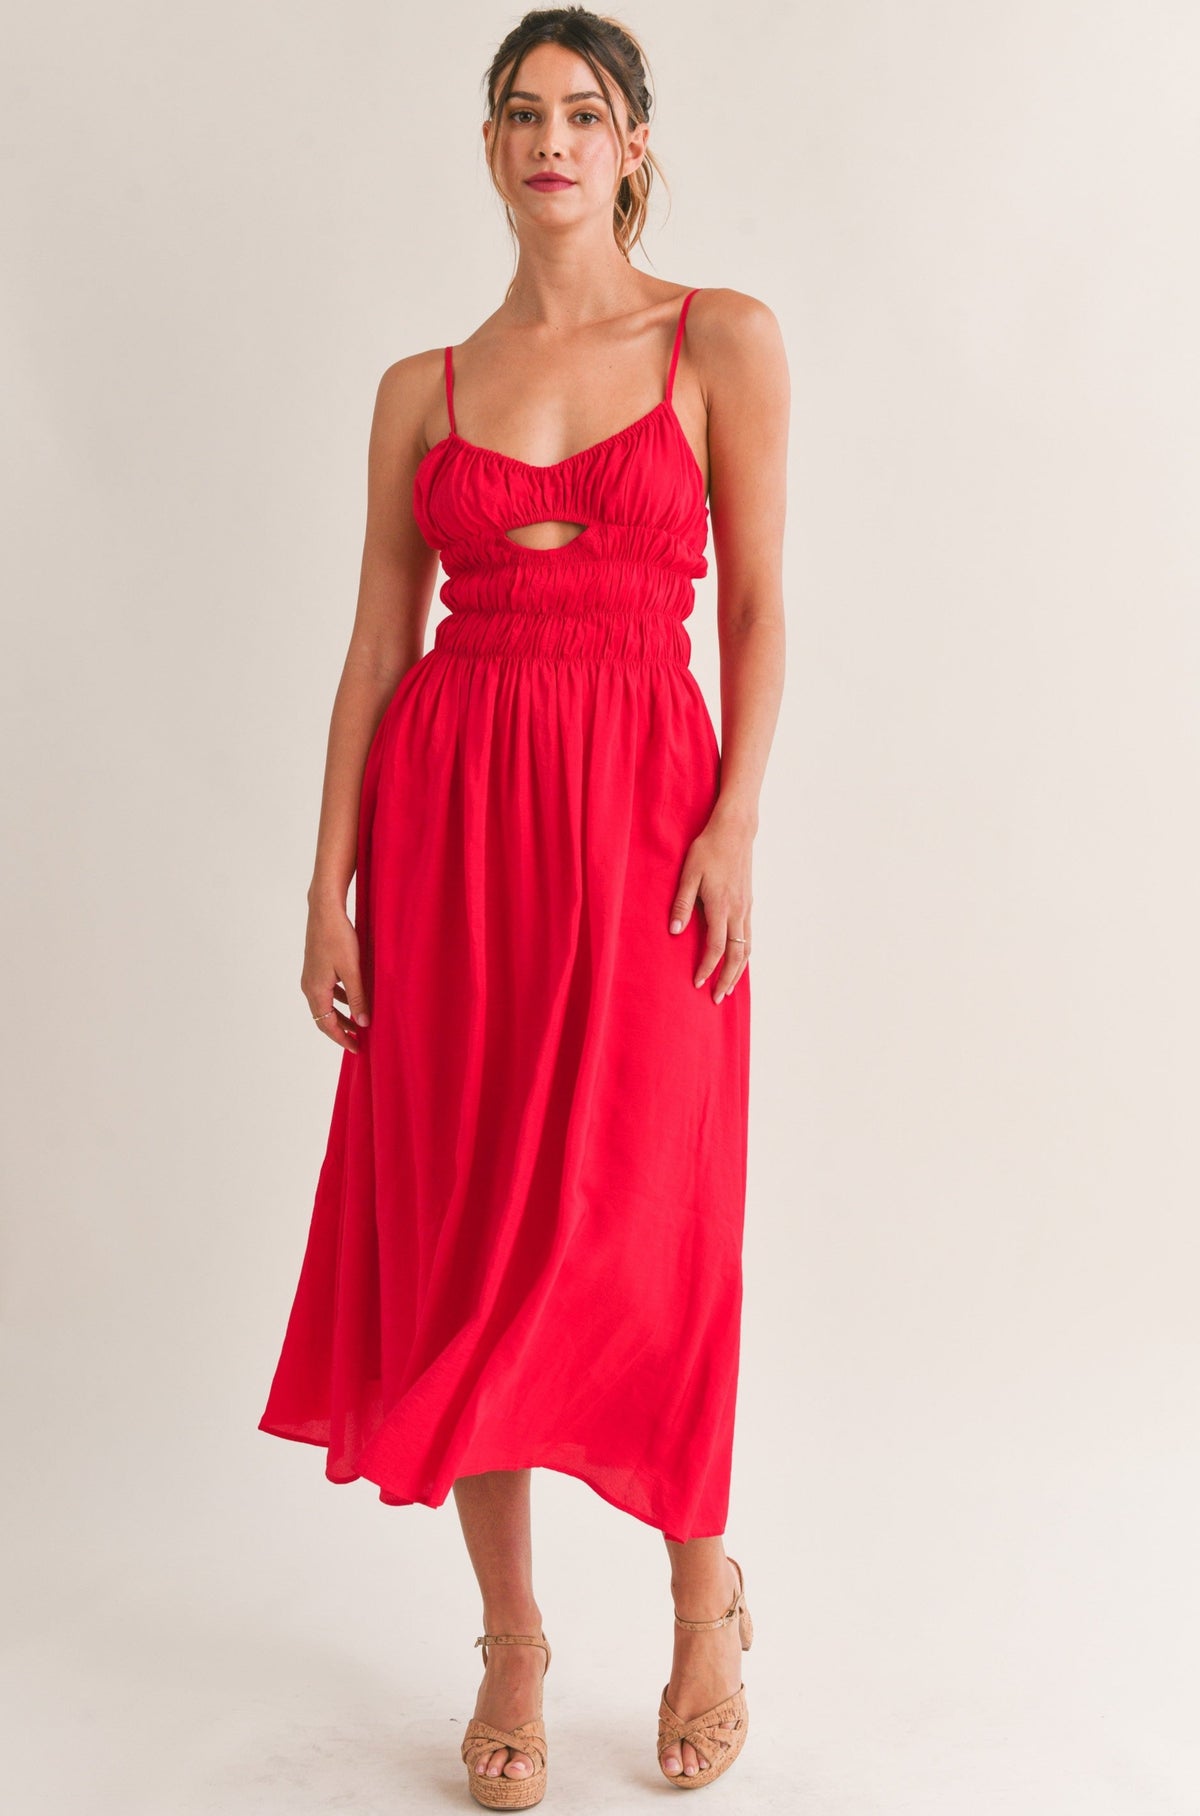 Red Hot Midi Dress